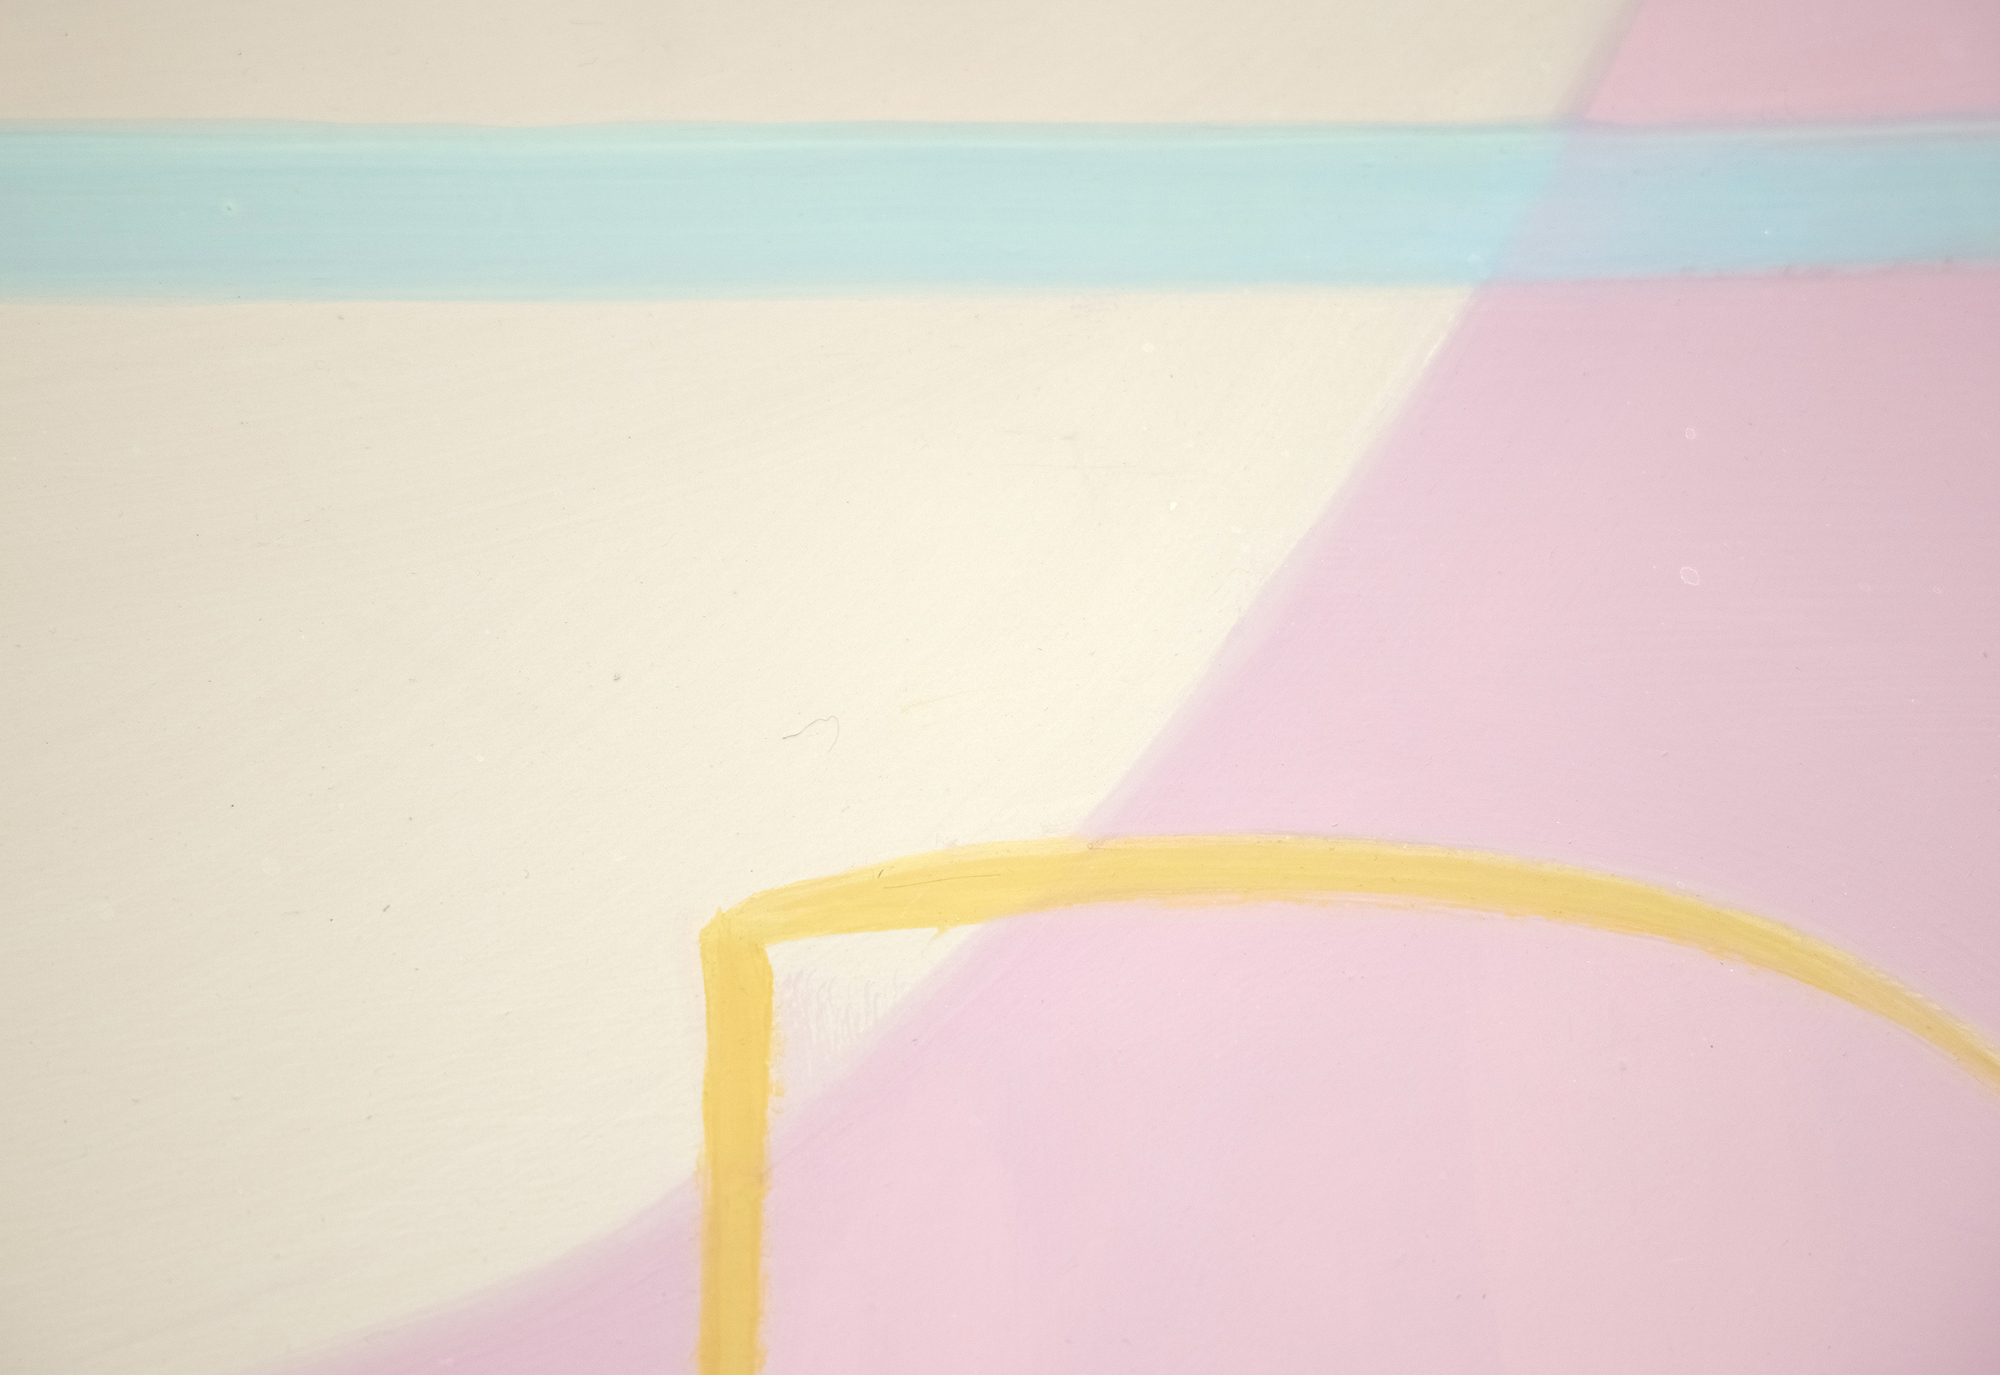 JOANNA POUSETTE-DART - Sin título (Estudio sobre el desierto rojo) - acrílico sobre panel de madera - 33 1/2 x 42 x 3/4 in.